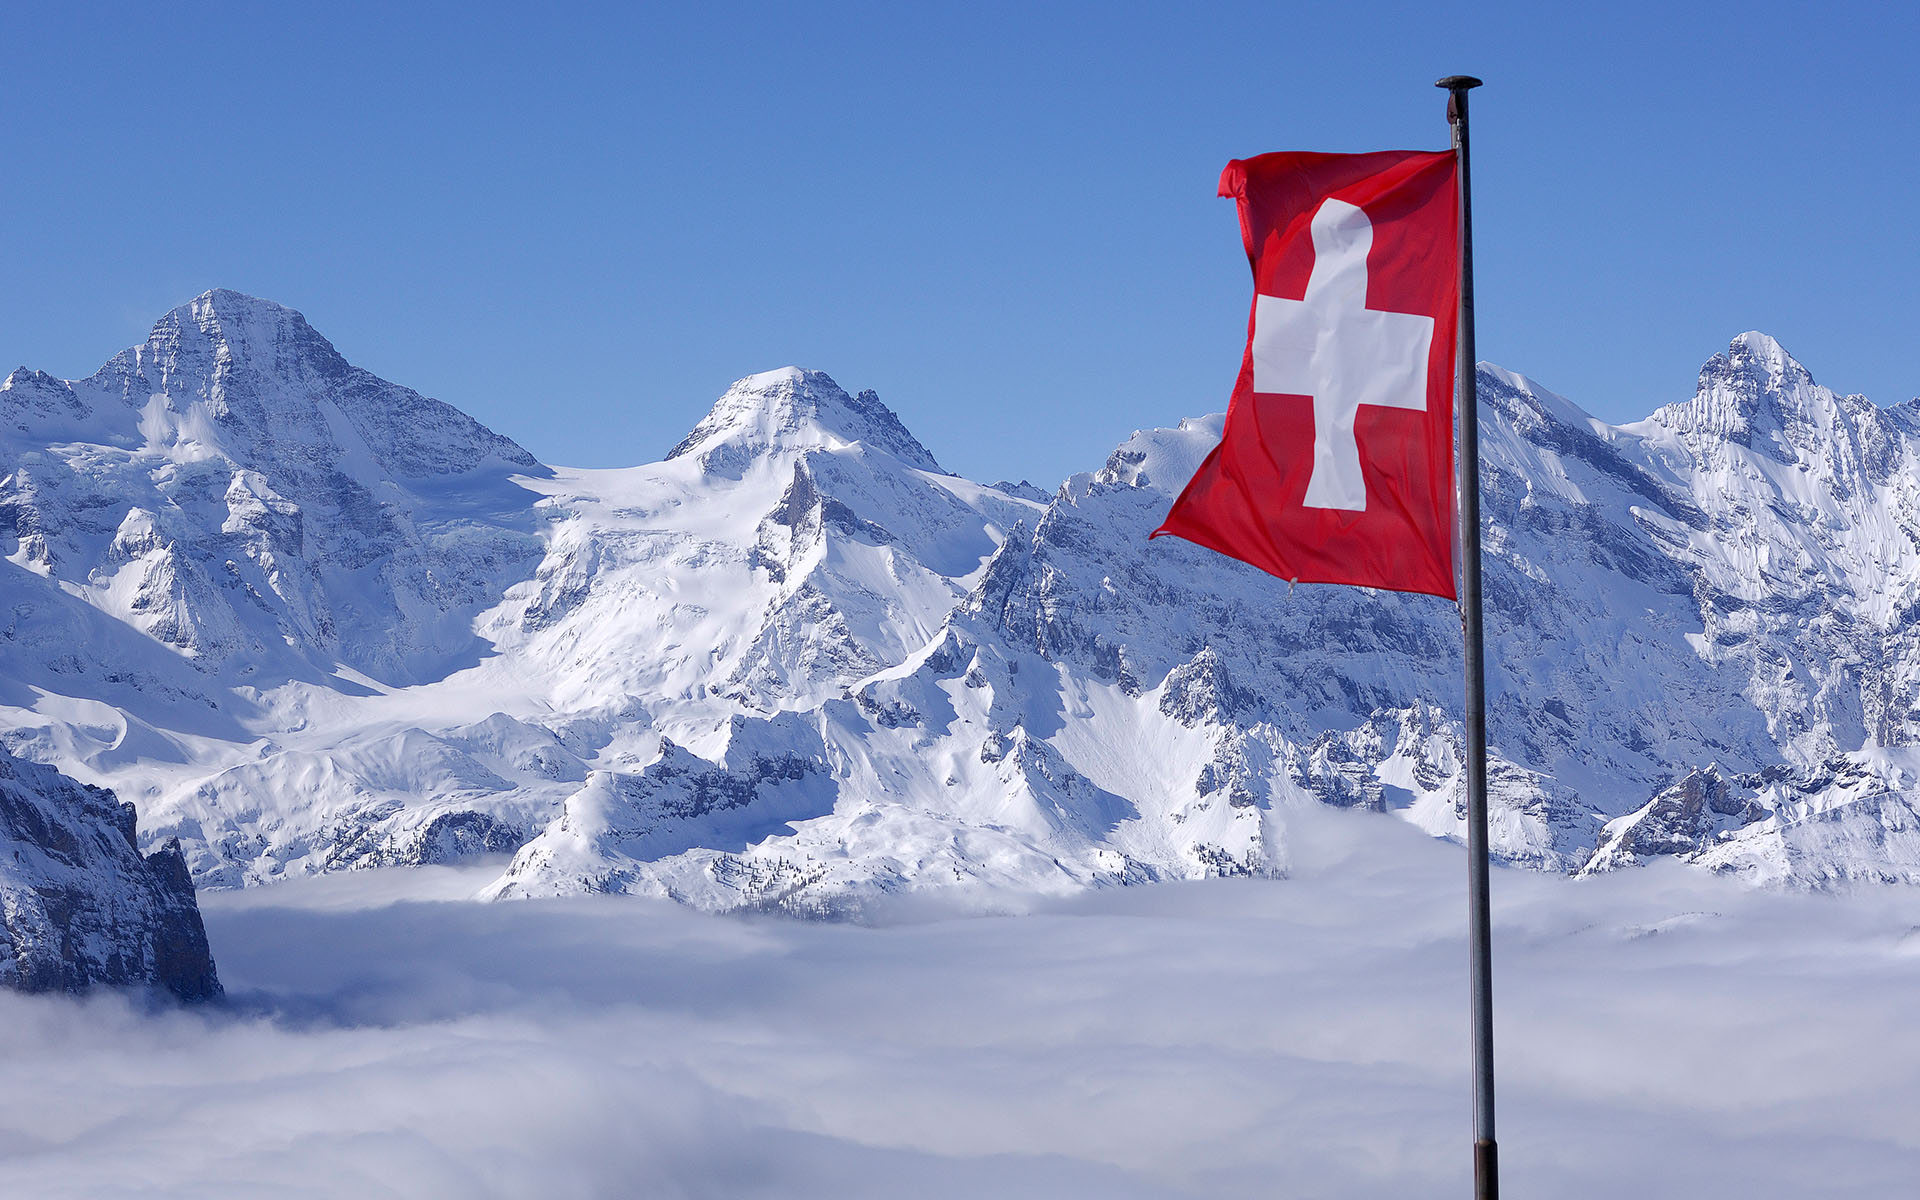 اسکی روی سقف هتل در سوئیس!